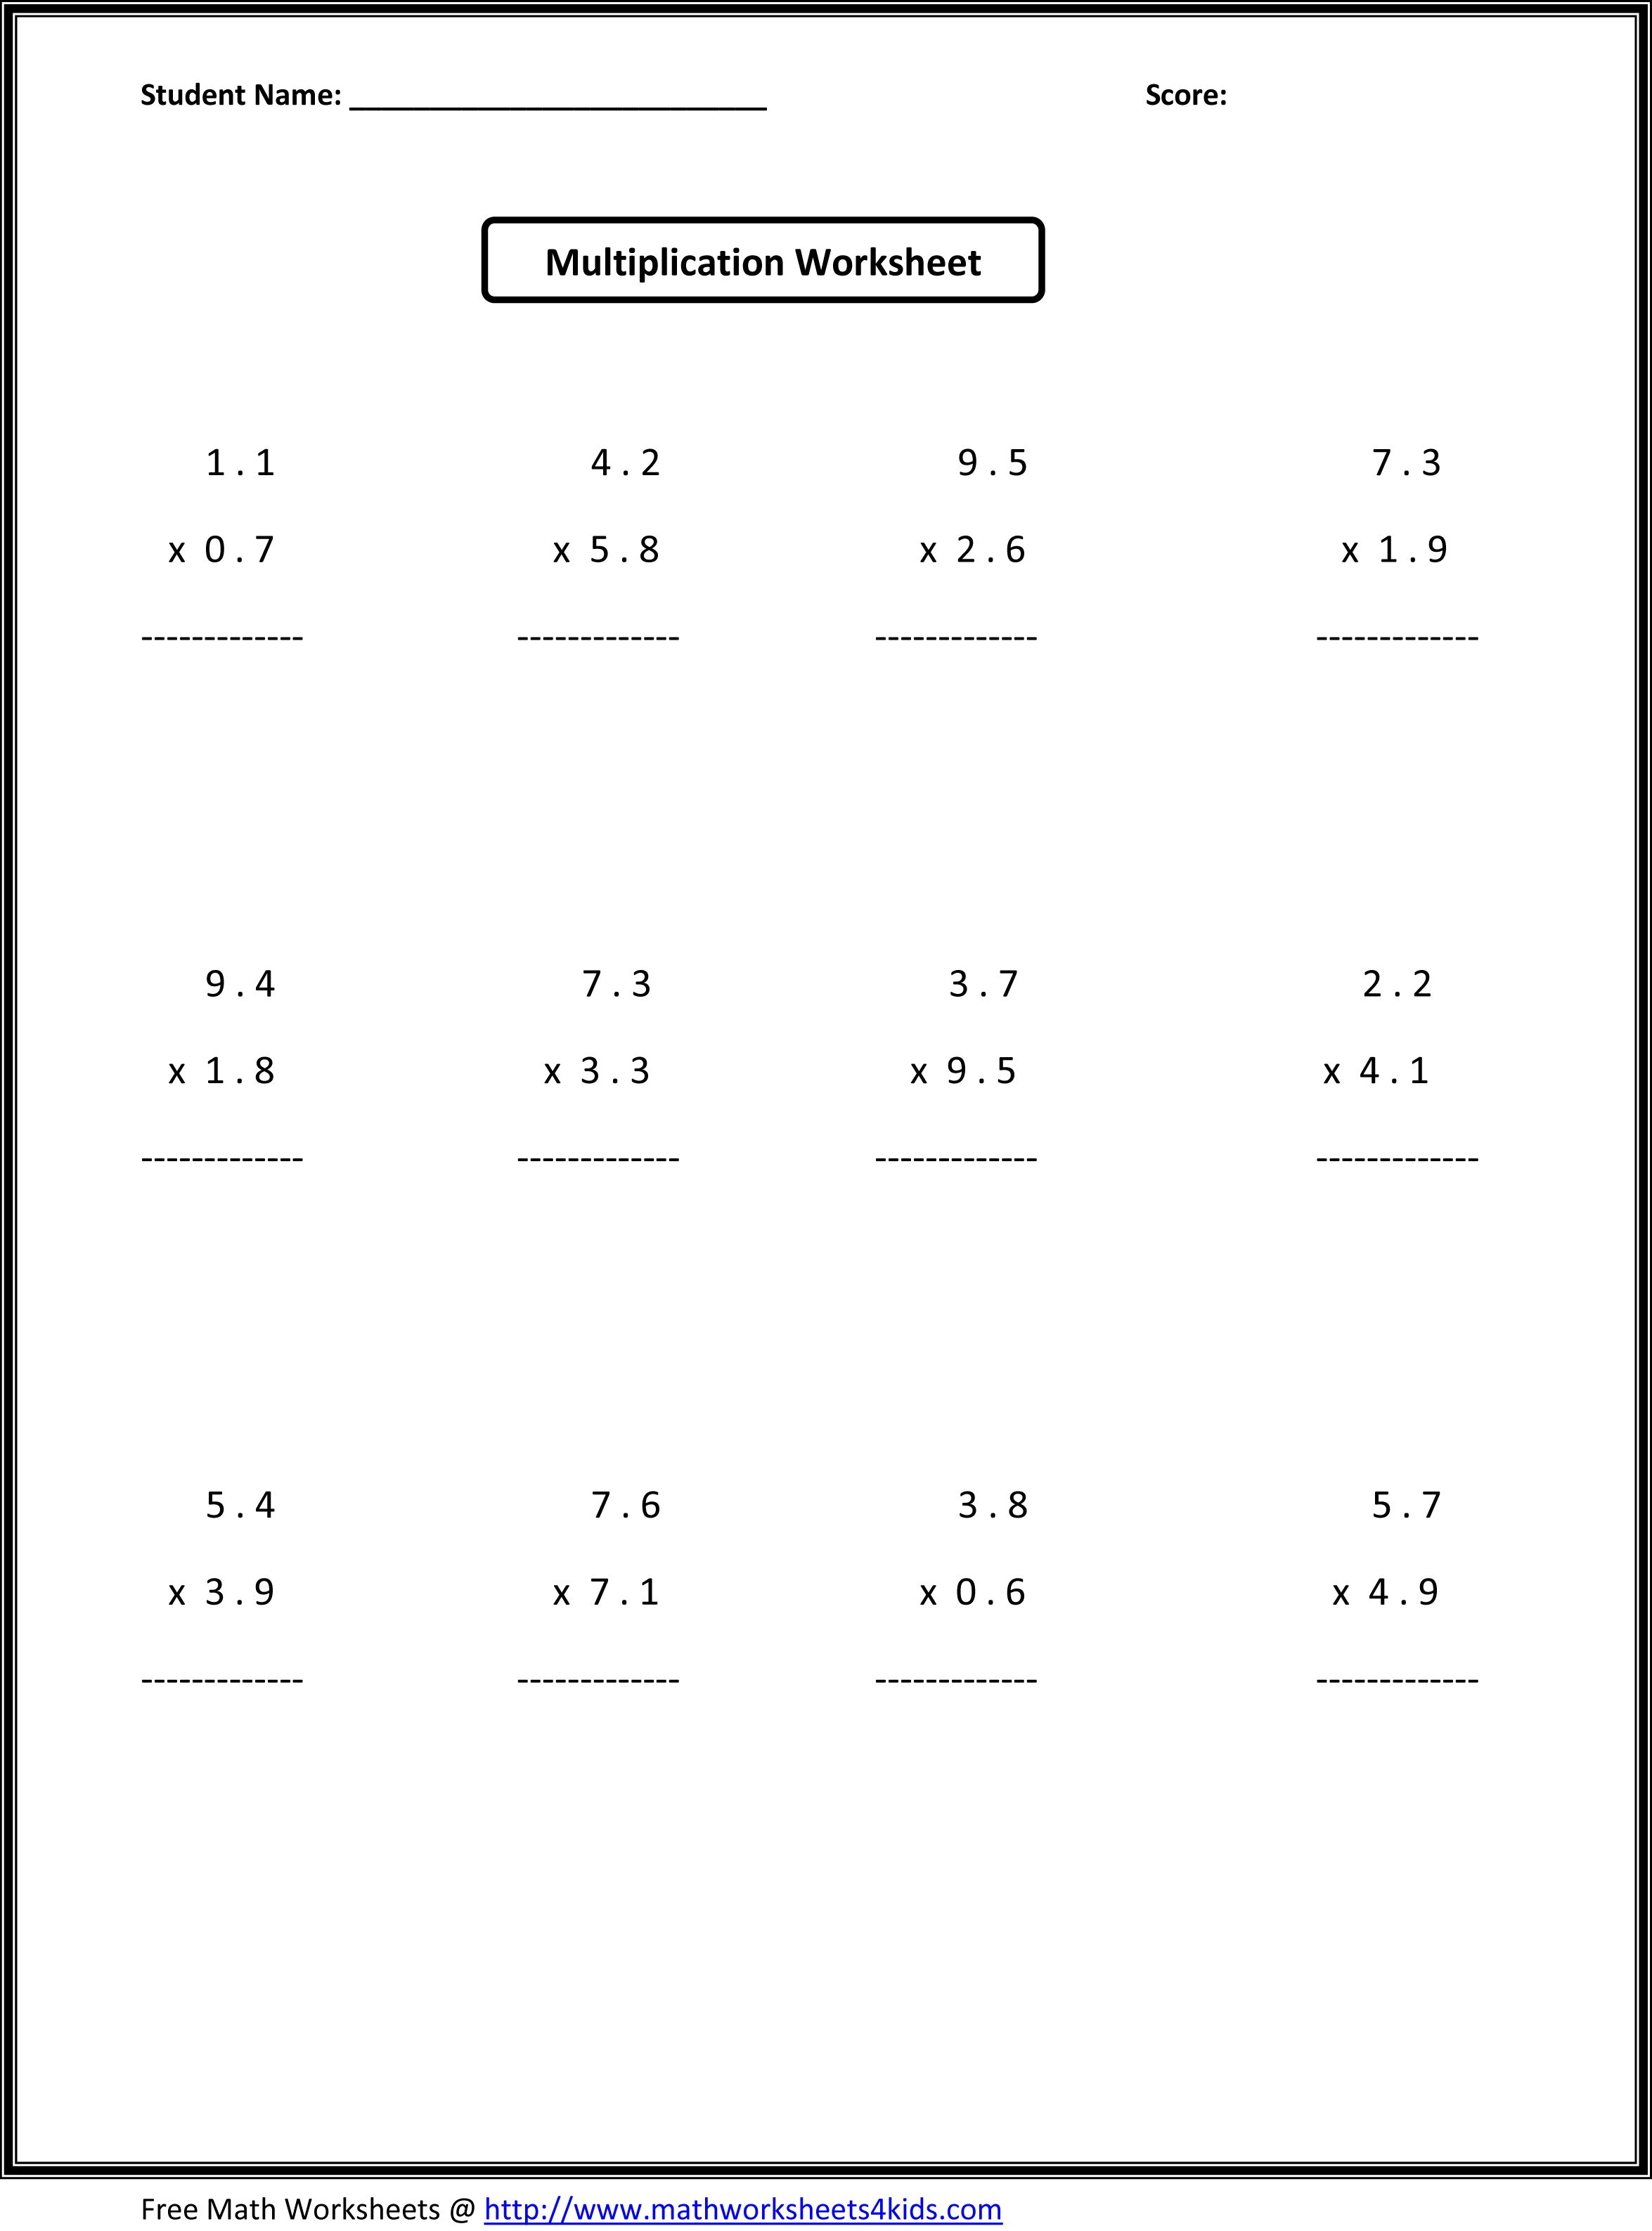 7Th Grade Math Worksheets Algebra Koran sticken co Multiplication 